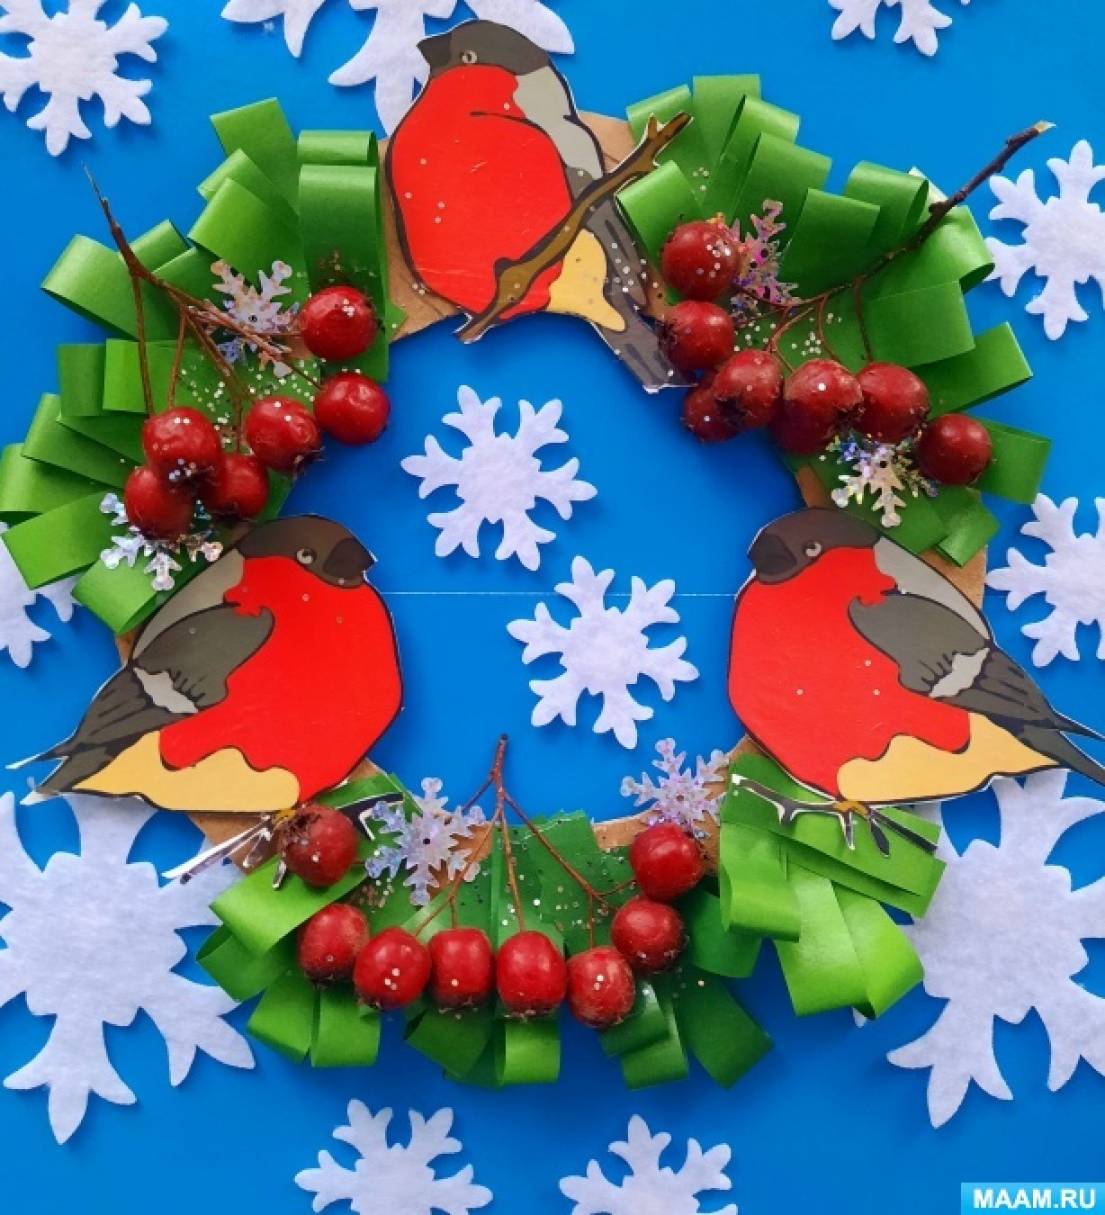 Мастер-класс по созданию праздничного венка из картона, подручного и природного материала «Снегири» ко Дню снегирей на МAAM